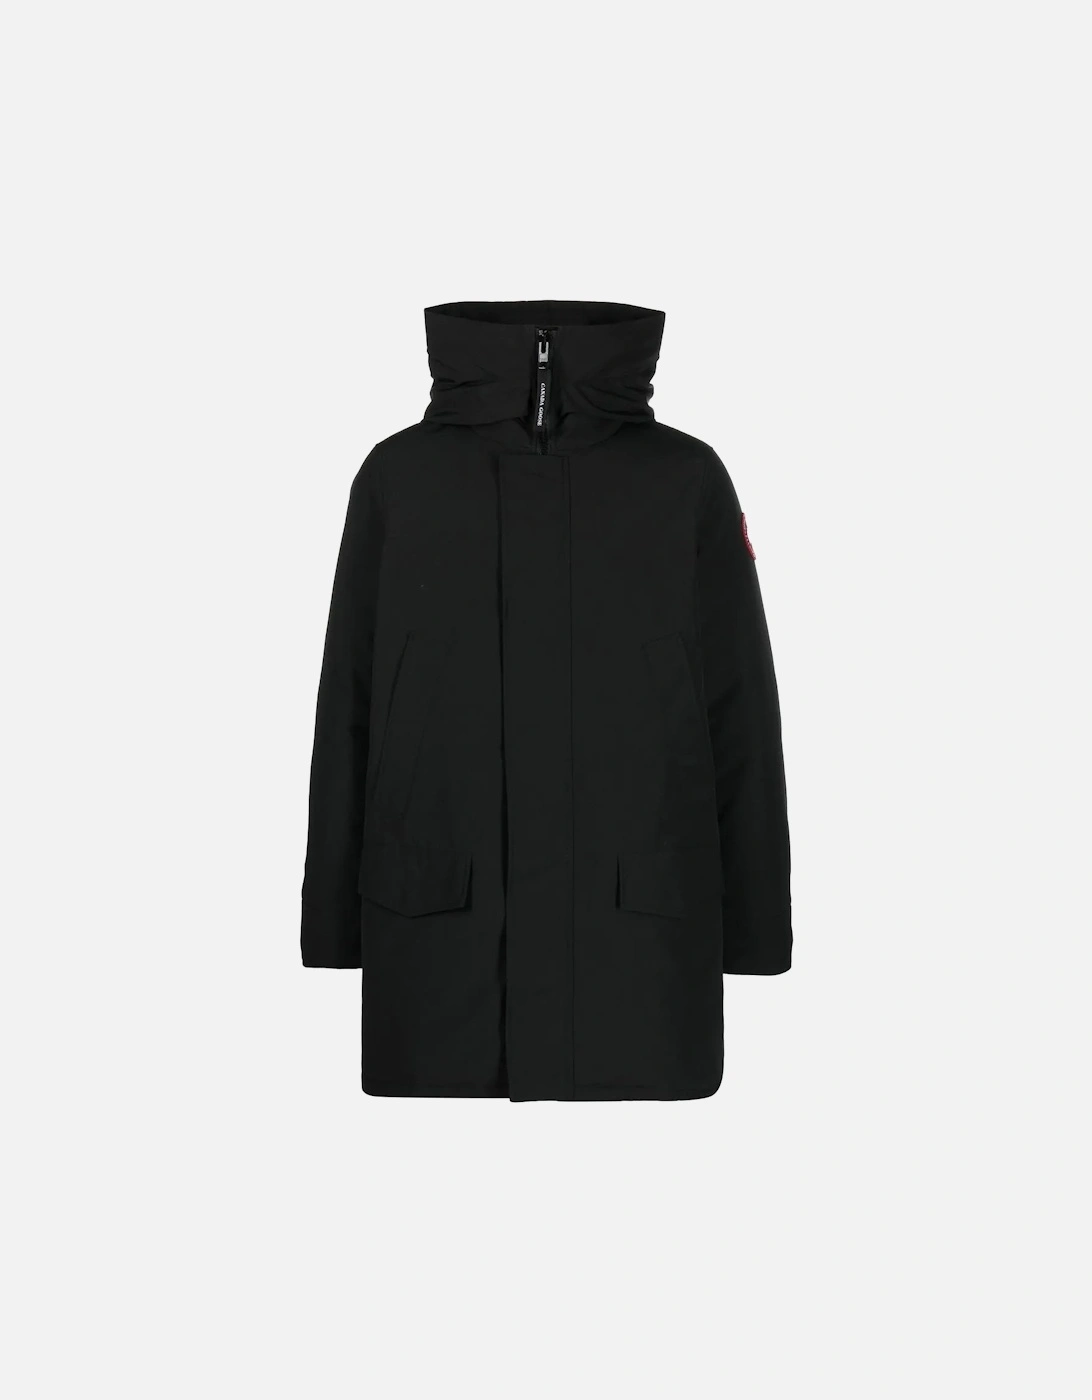 Langford Parka Coat in Black, 6 of 5